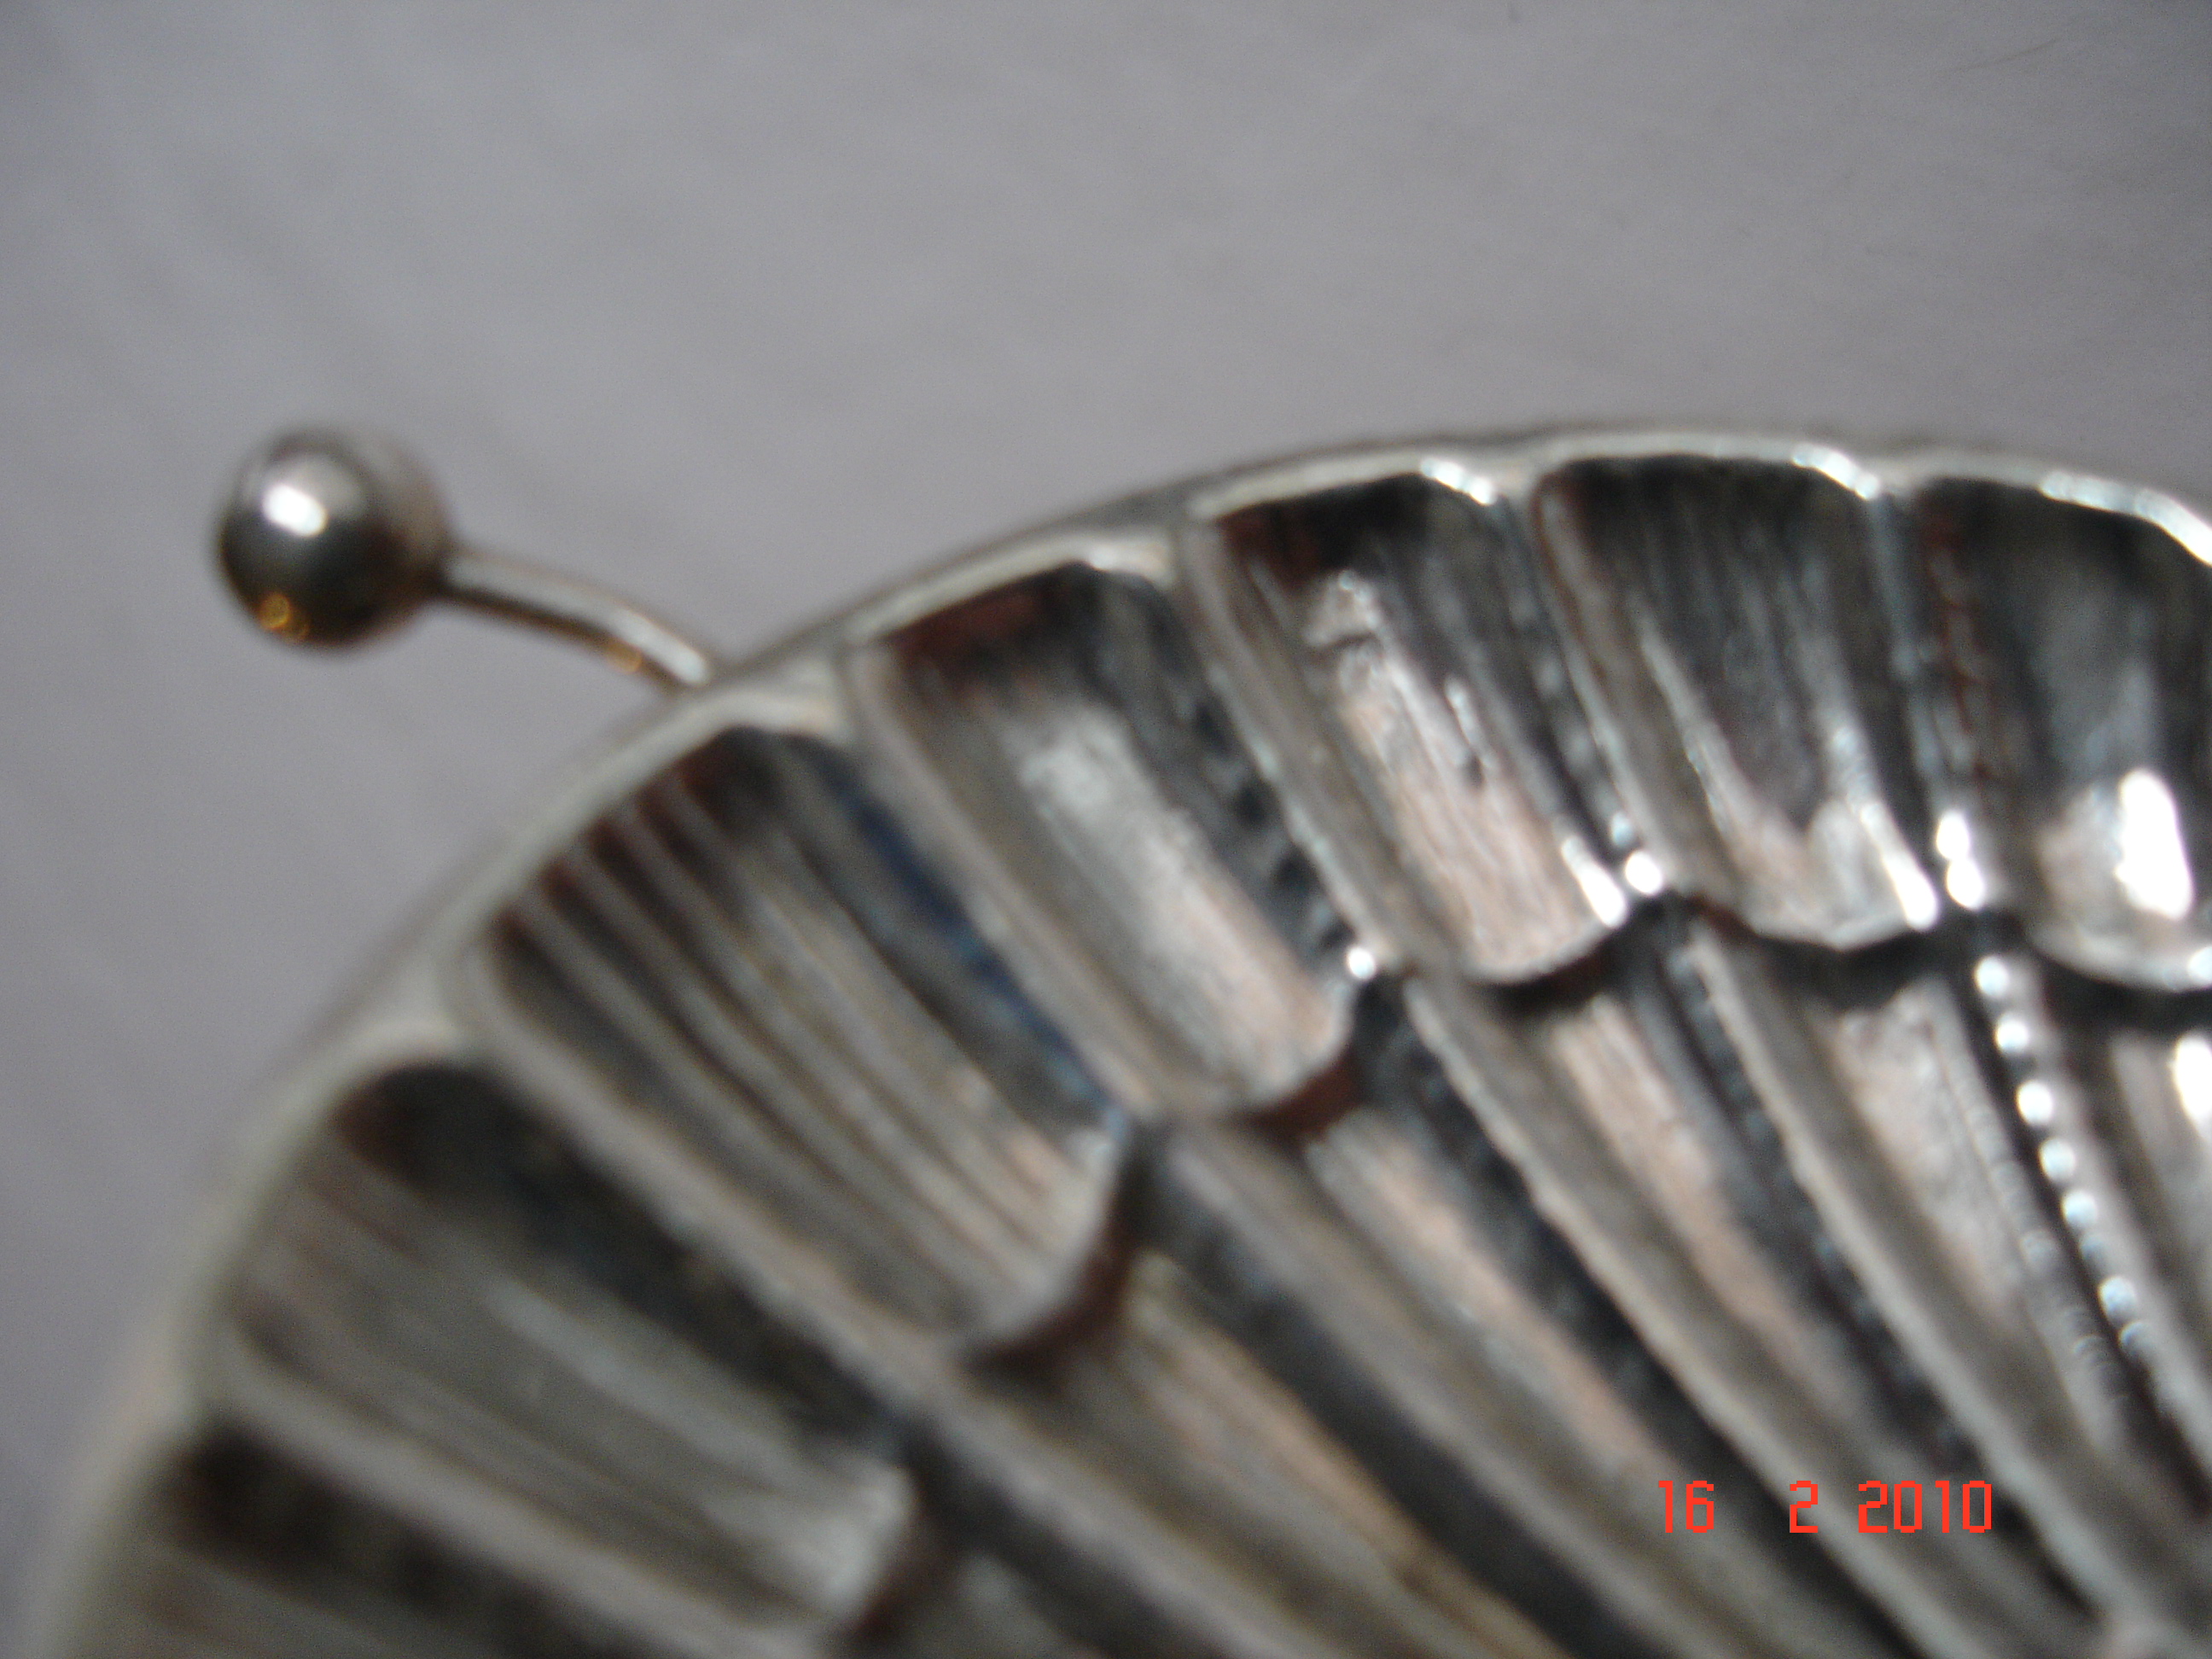 juego de doce cucharillas de café de plata de l - Buy Antique sterling  silver objects on todocoleccion